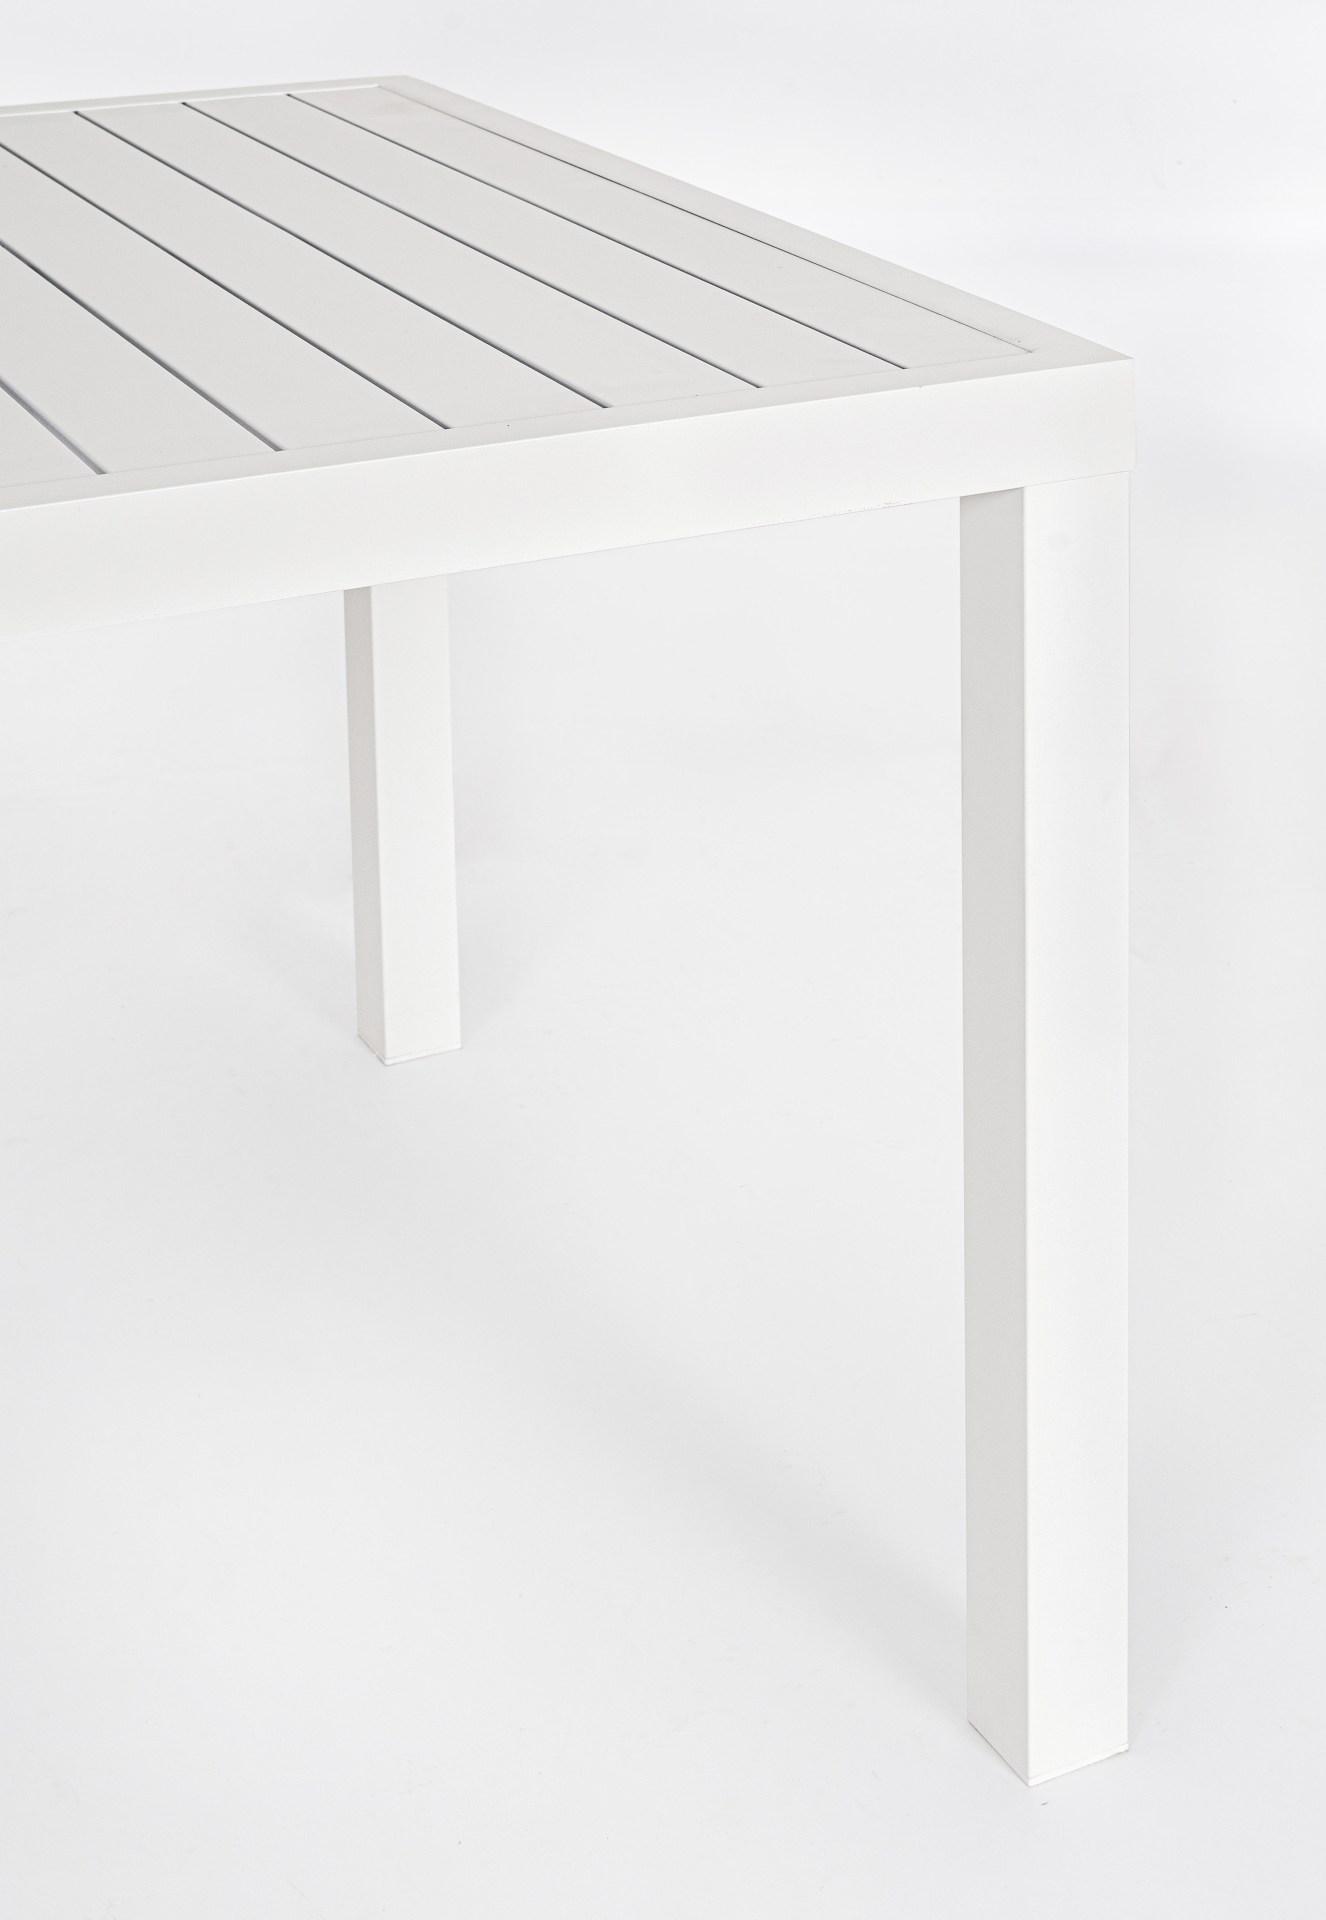 Der Gartentisch Hilde überzeugt mit seinem modernen Design. Gefertigt wurde er aus Aluminium, welches einen weißen Farbton besitzt. Das Gestell ist aus auch Aluminium und hat eine weiße Farbe. Der Tisch verfügt über eine Länge von 150 cm und ist für den O